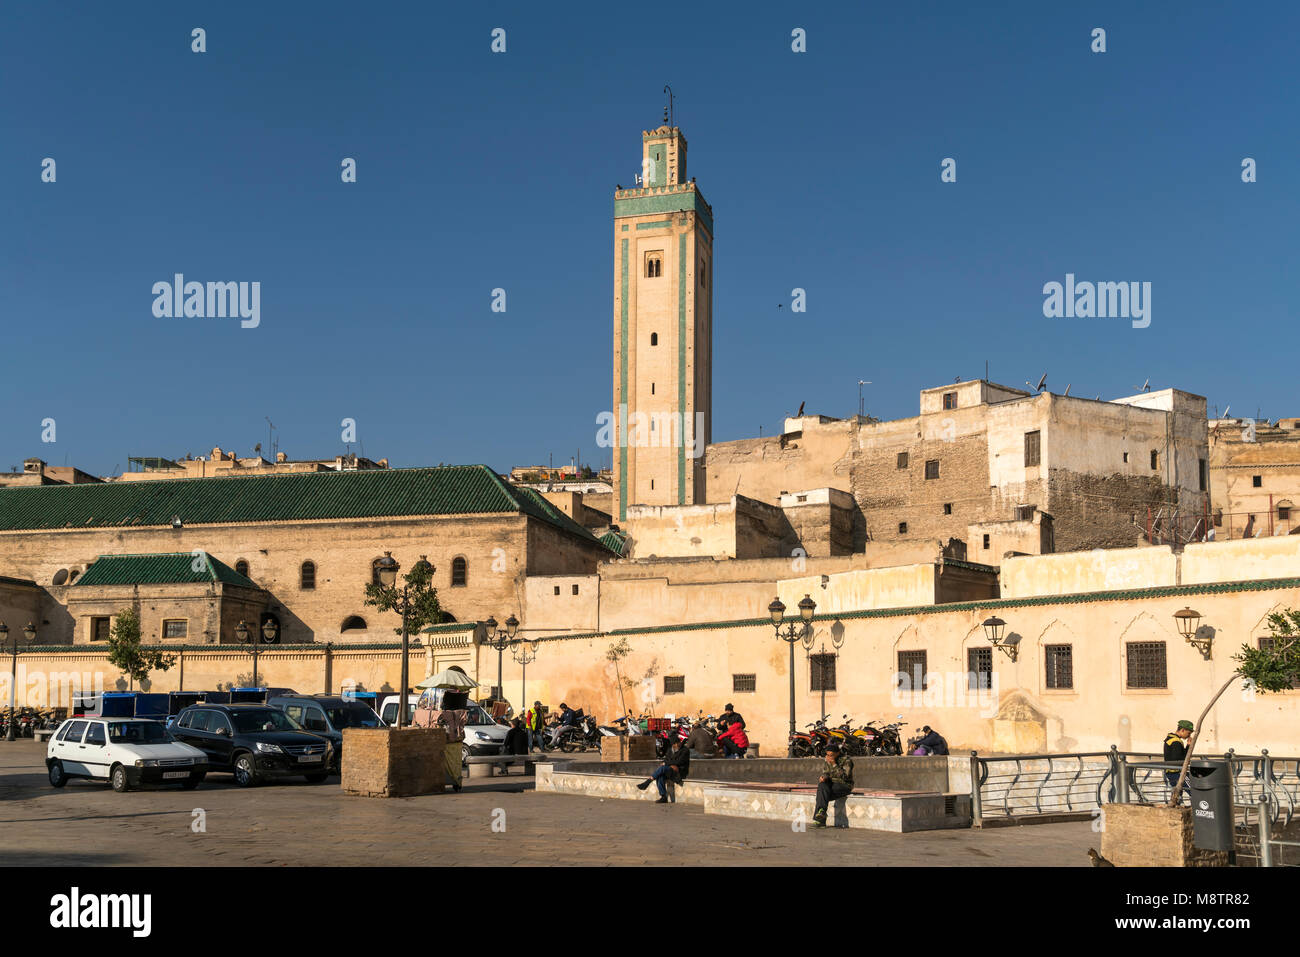 R'CIF Moschee à Fes, Königreich Marokko, Afrika | Mosquée R'CIF à Fes, Royaume du Maroc, l'Afrique Banque D'Images